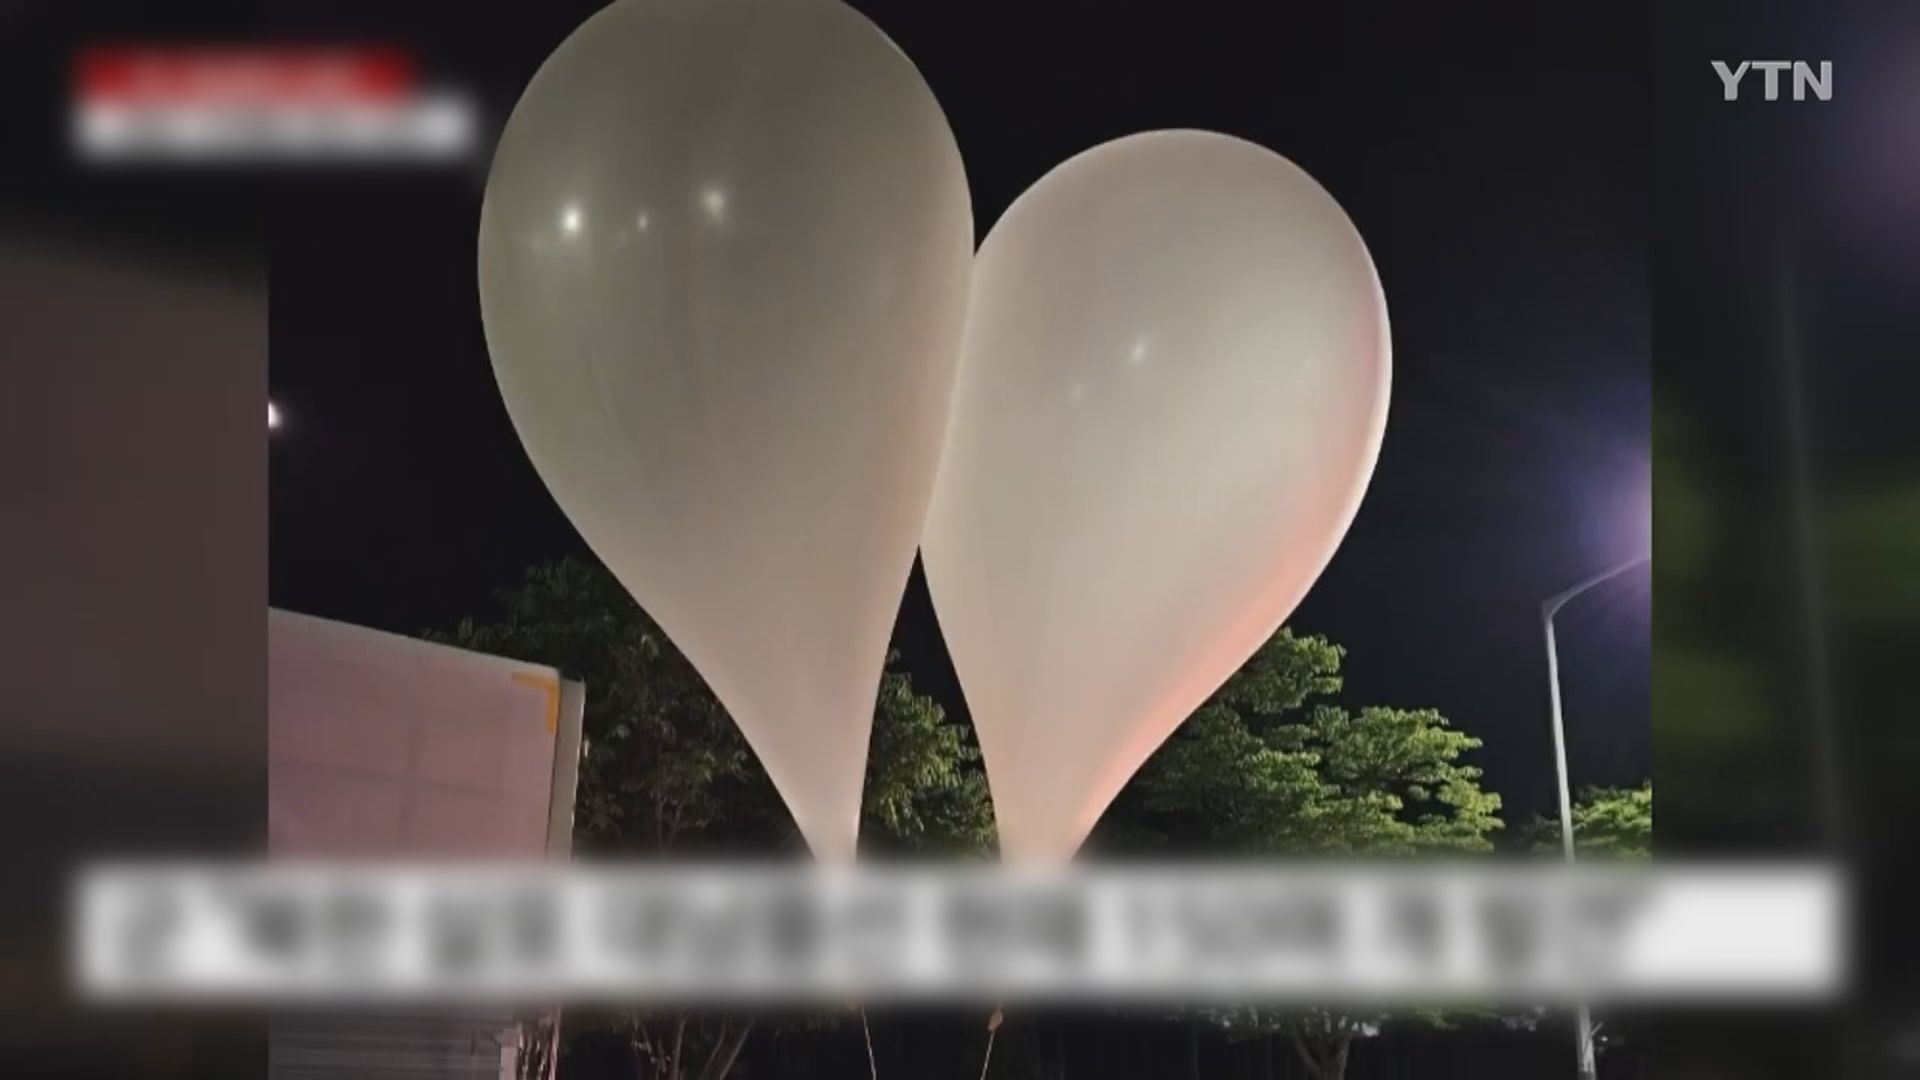 南韓聯合參謀本部促北韓停止散布垃圾氣球 指是低俗行為